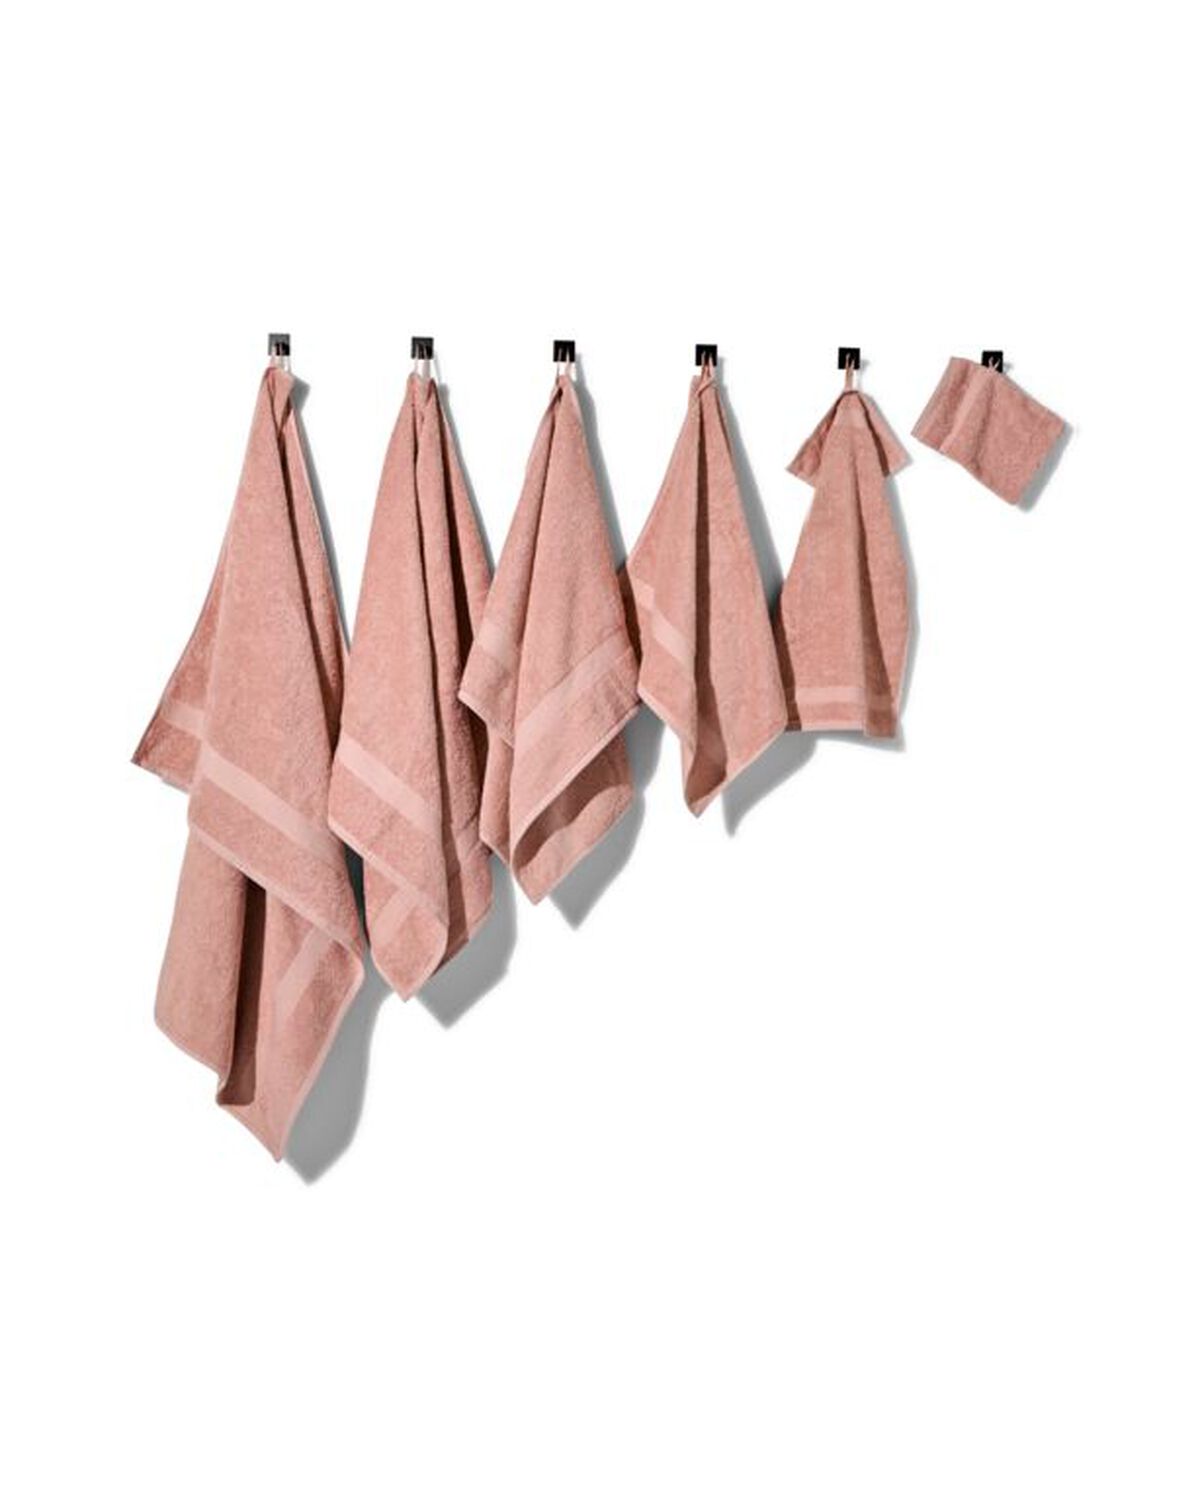 serviettes de bain qualité épaisse rose clair - 200878 - HEMA